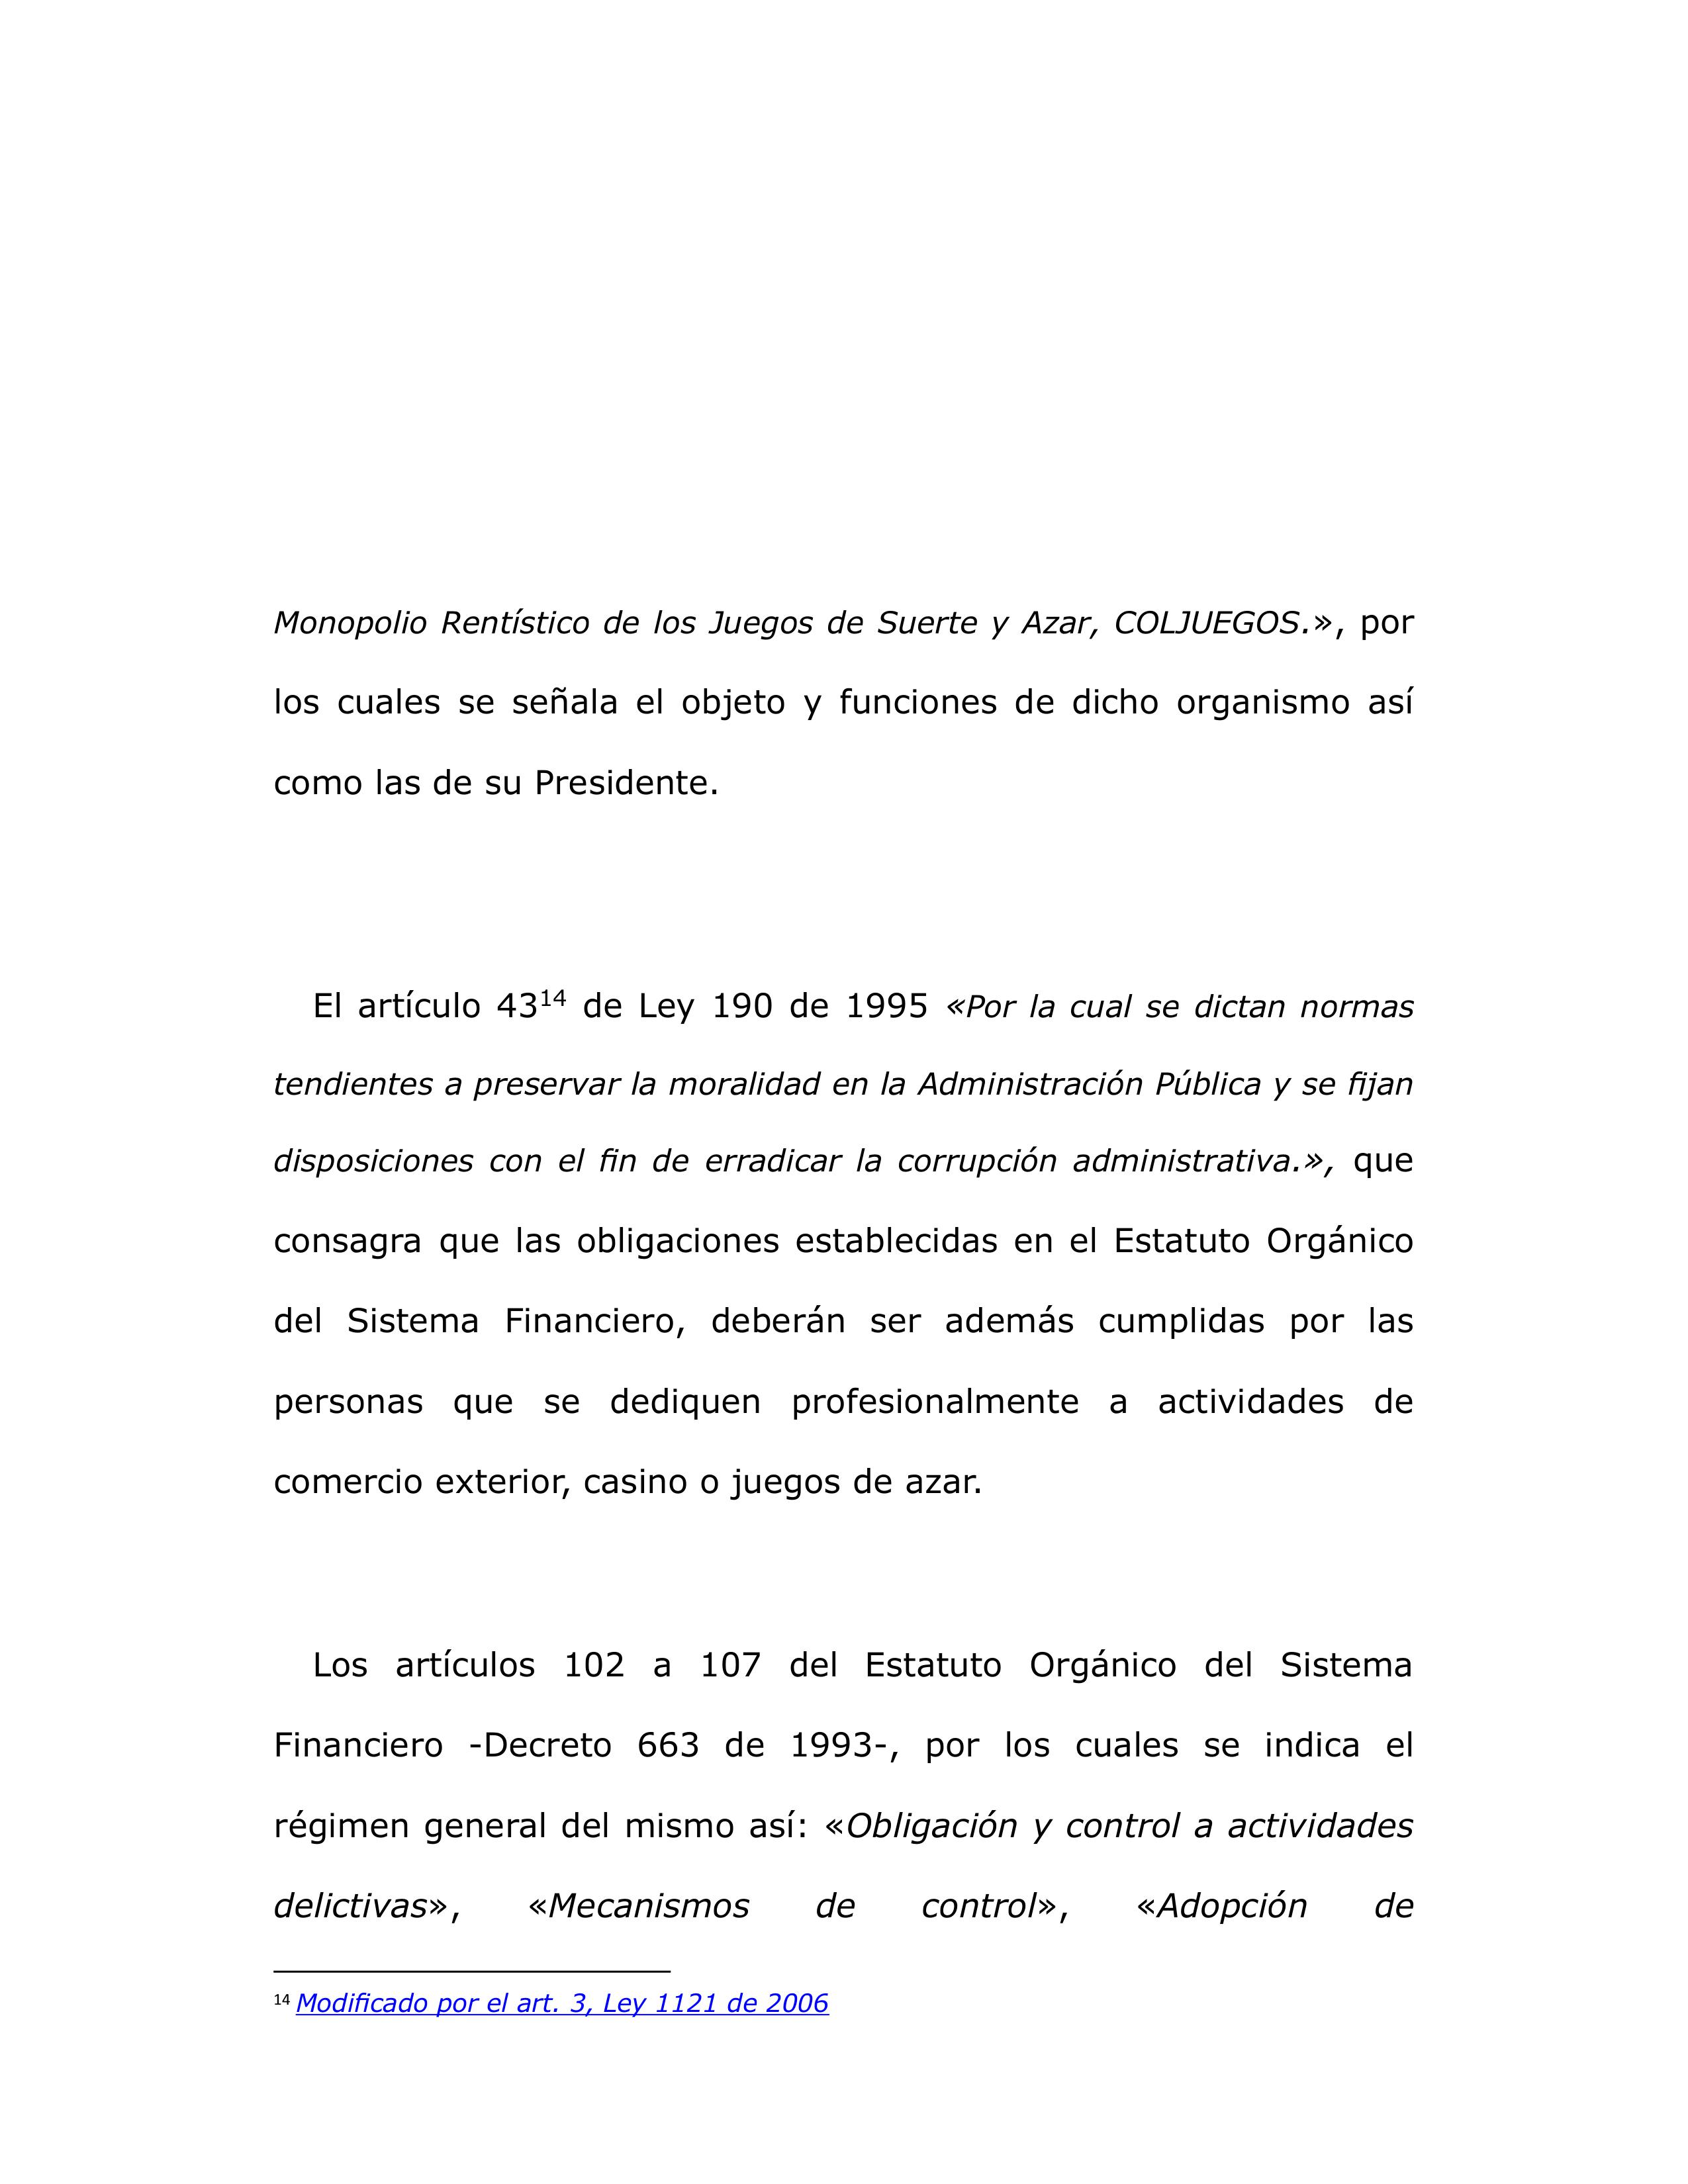 SIPLAFT de Coljuegos es legal, Consejo de Estado 